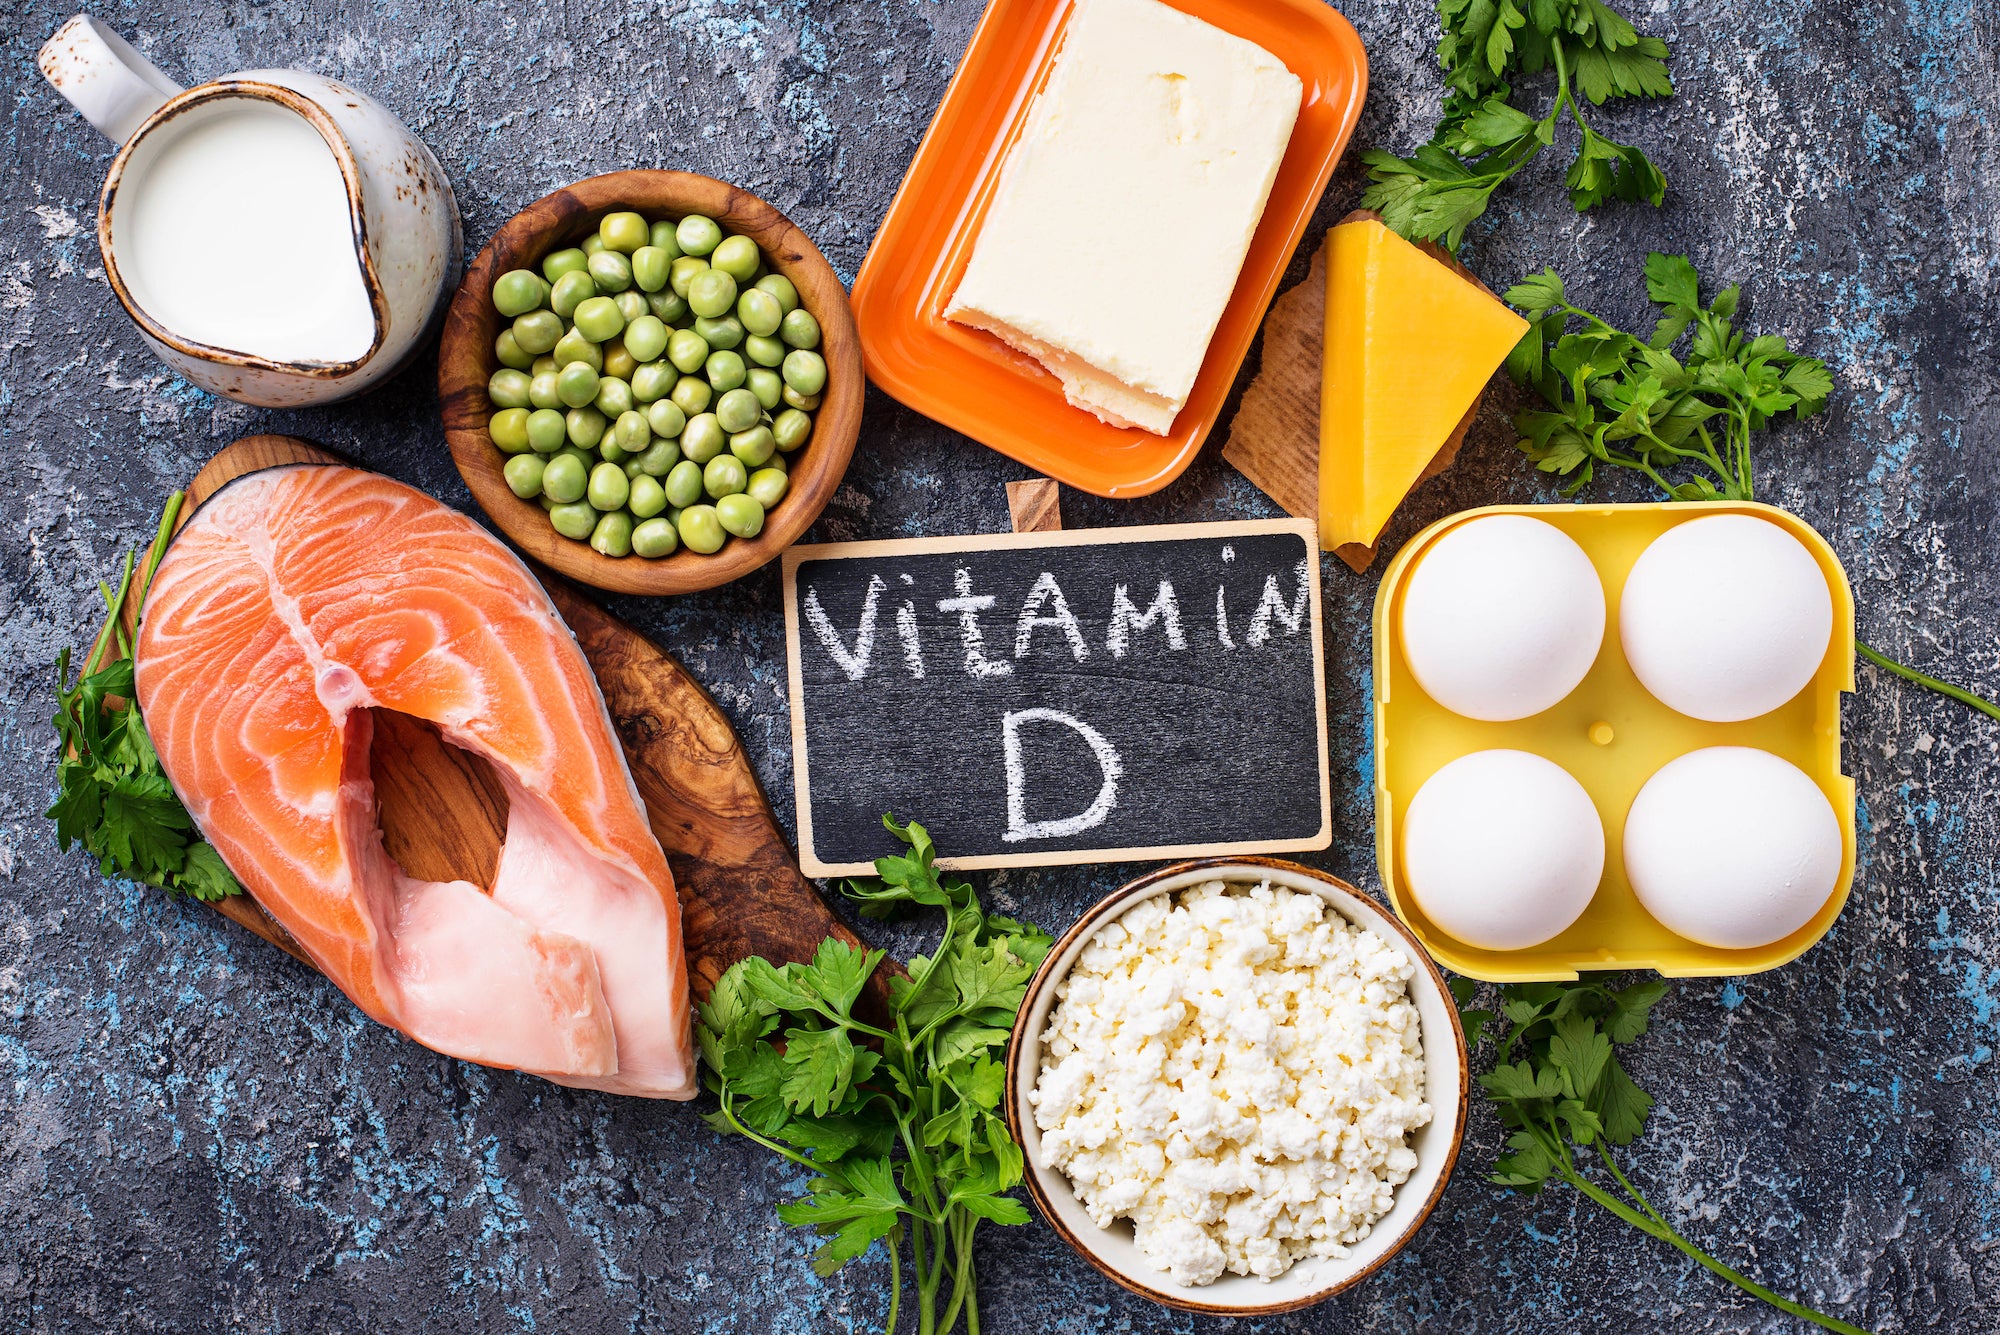  50% af danskerne mangler D-vitamin - Får du nok?